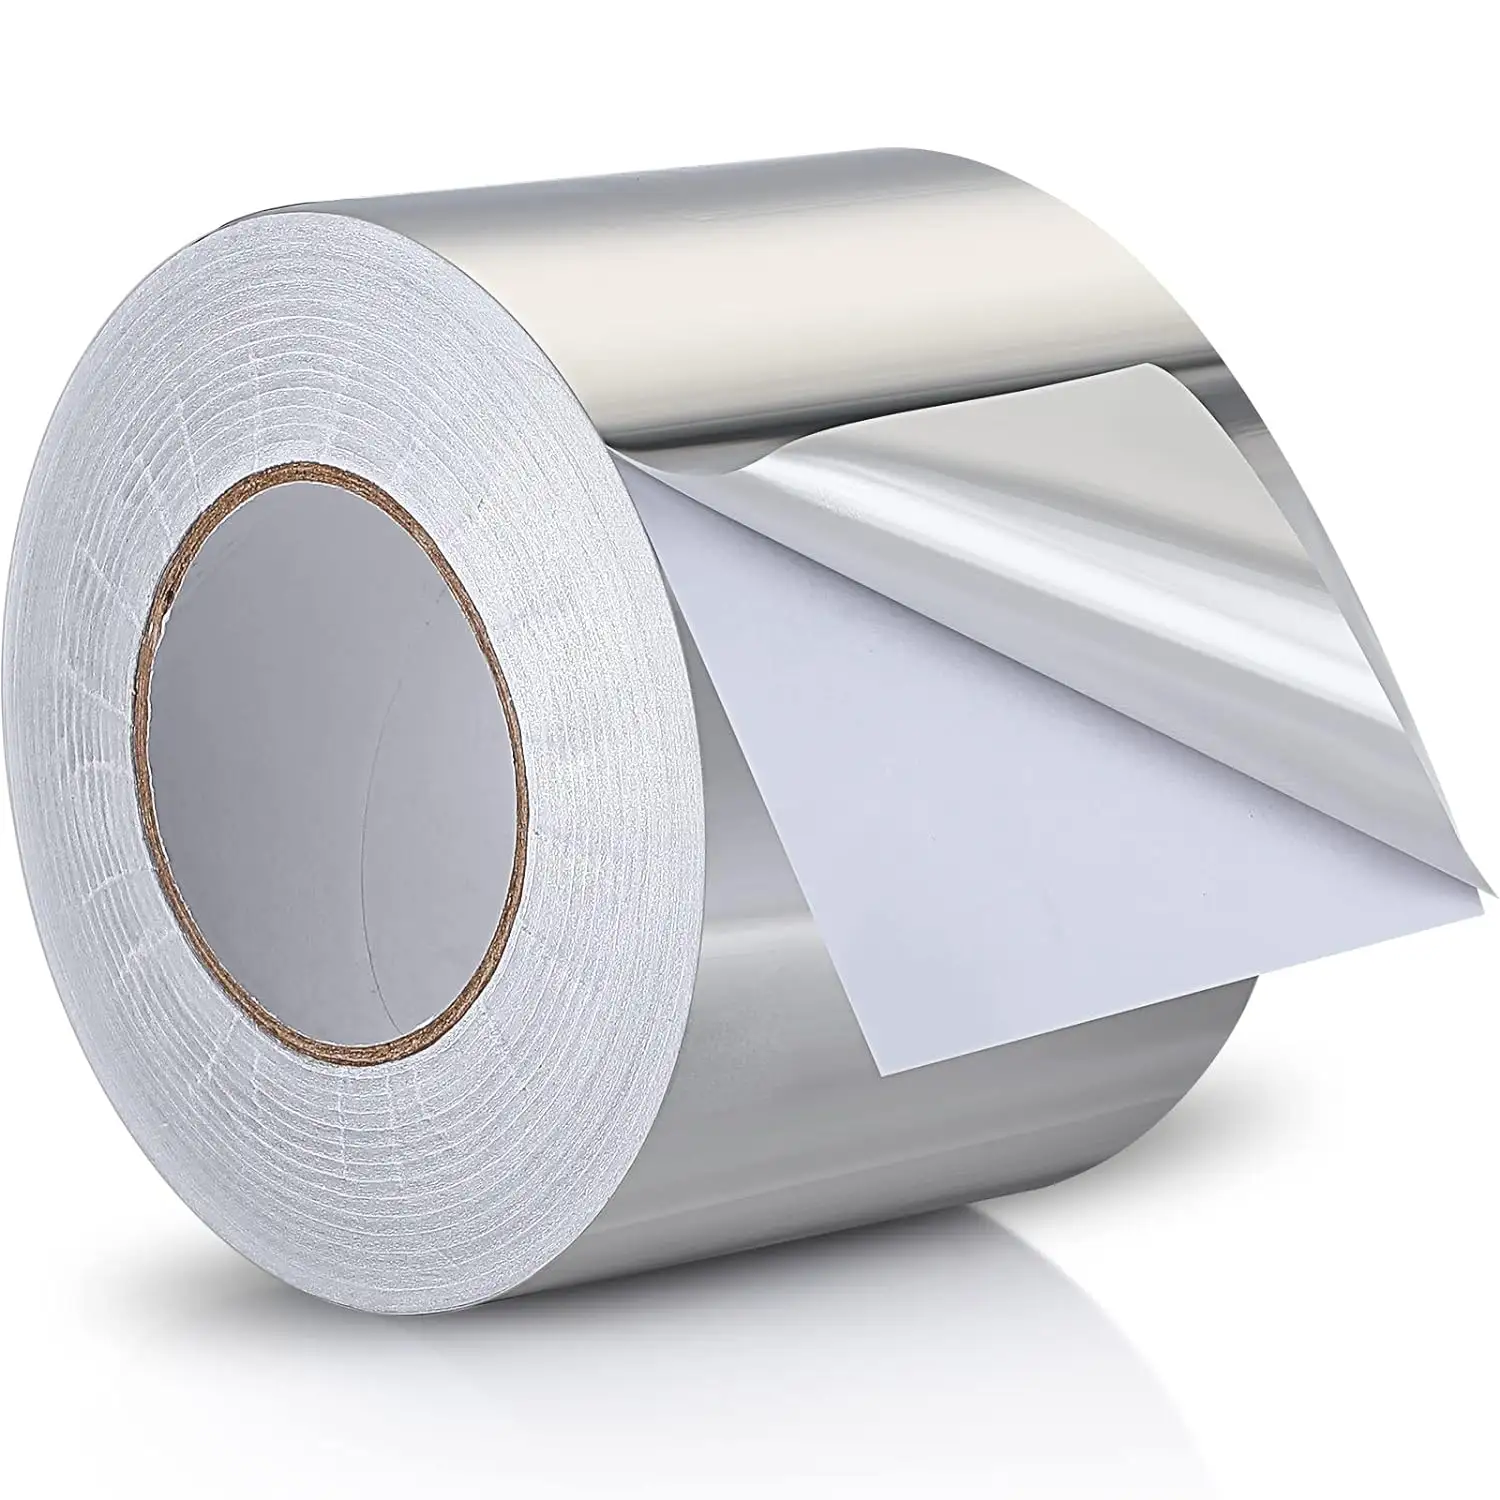 Cinta de papel de aluminio Cinta aislante de alta temperatura Cinta plateada resistente al calor para sellado de ventilación de secador de conductos